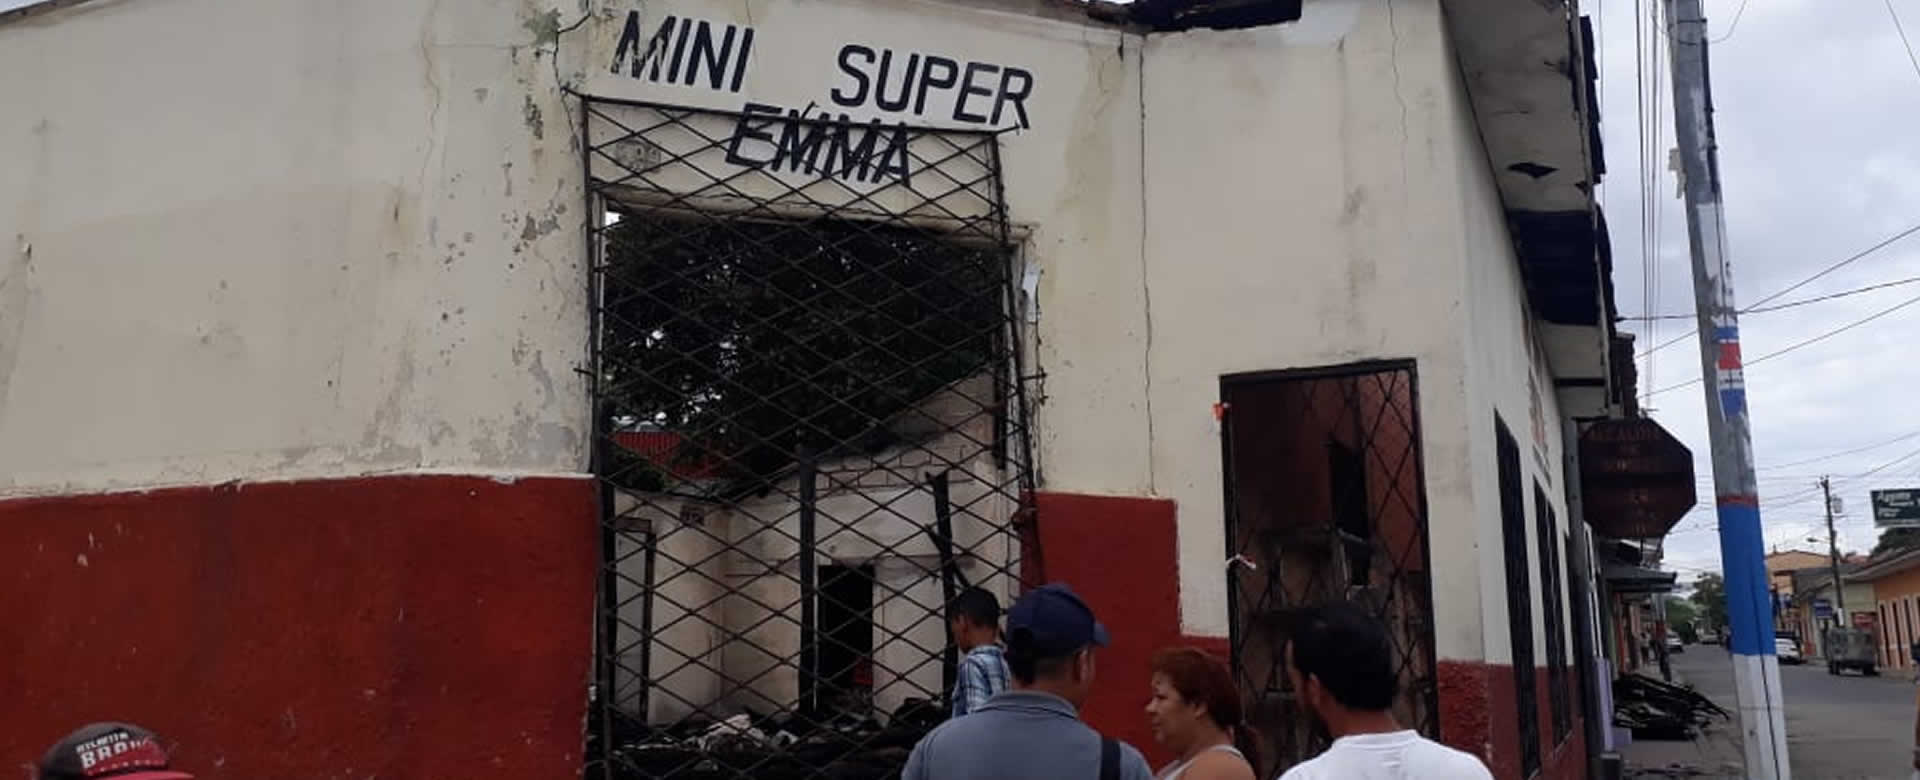 Mini Súper Emma se incendia producto a un corto circuito en Somoto